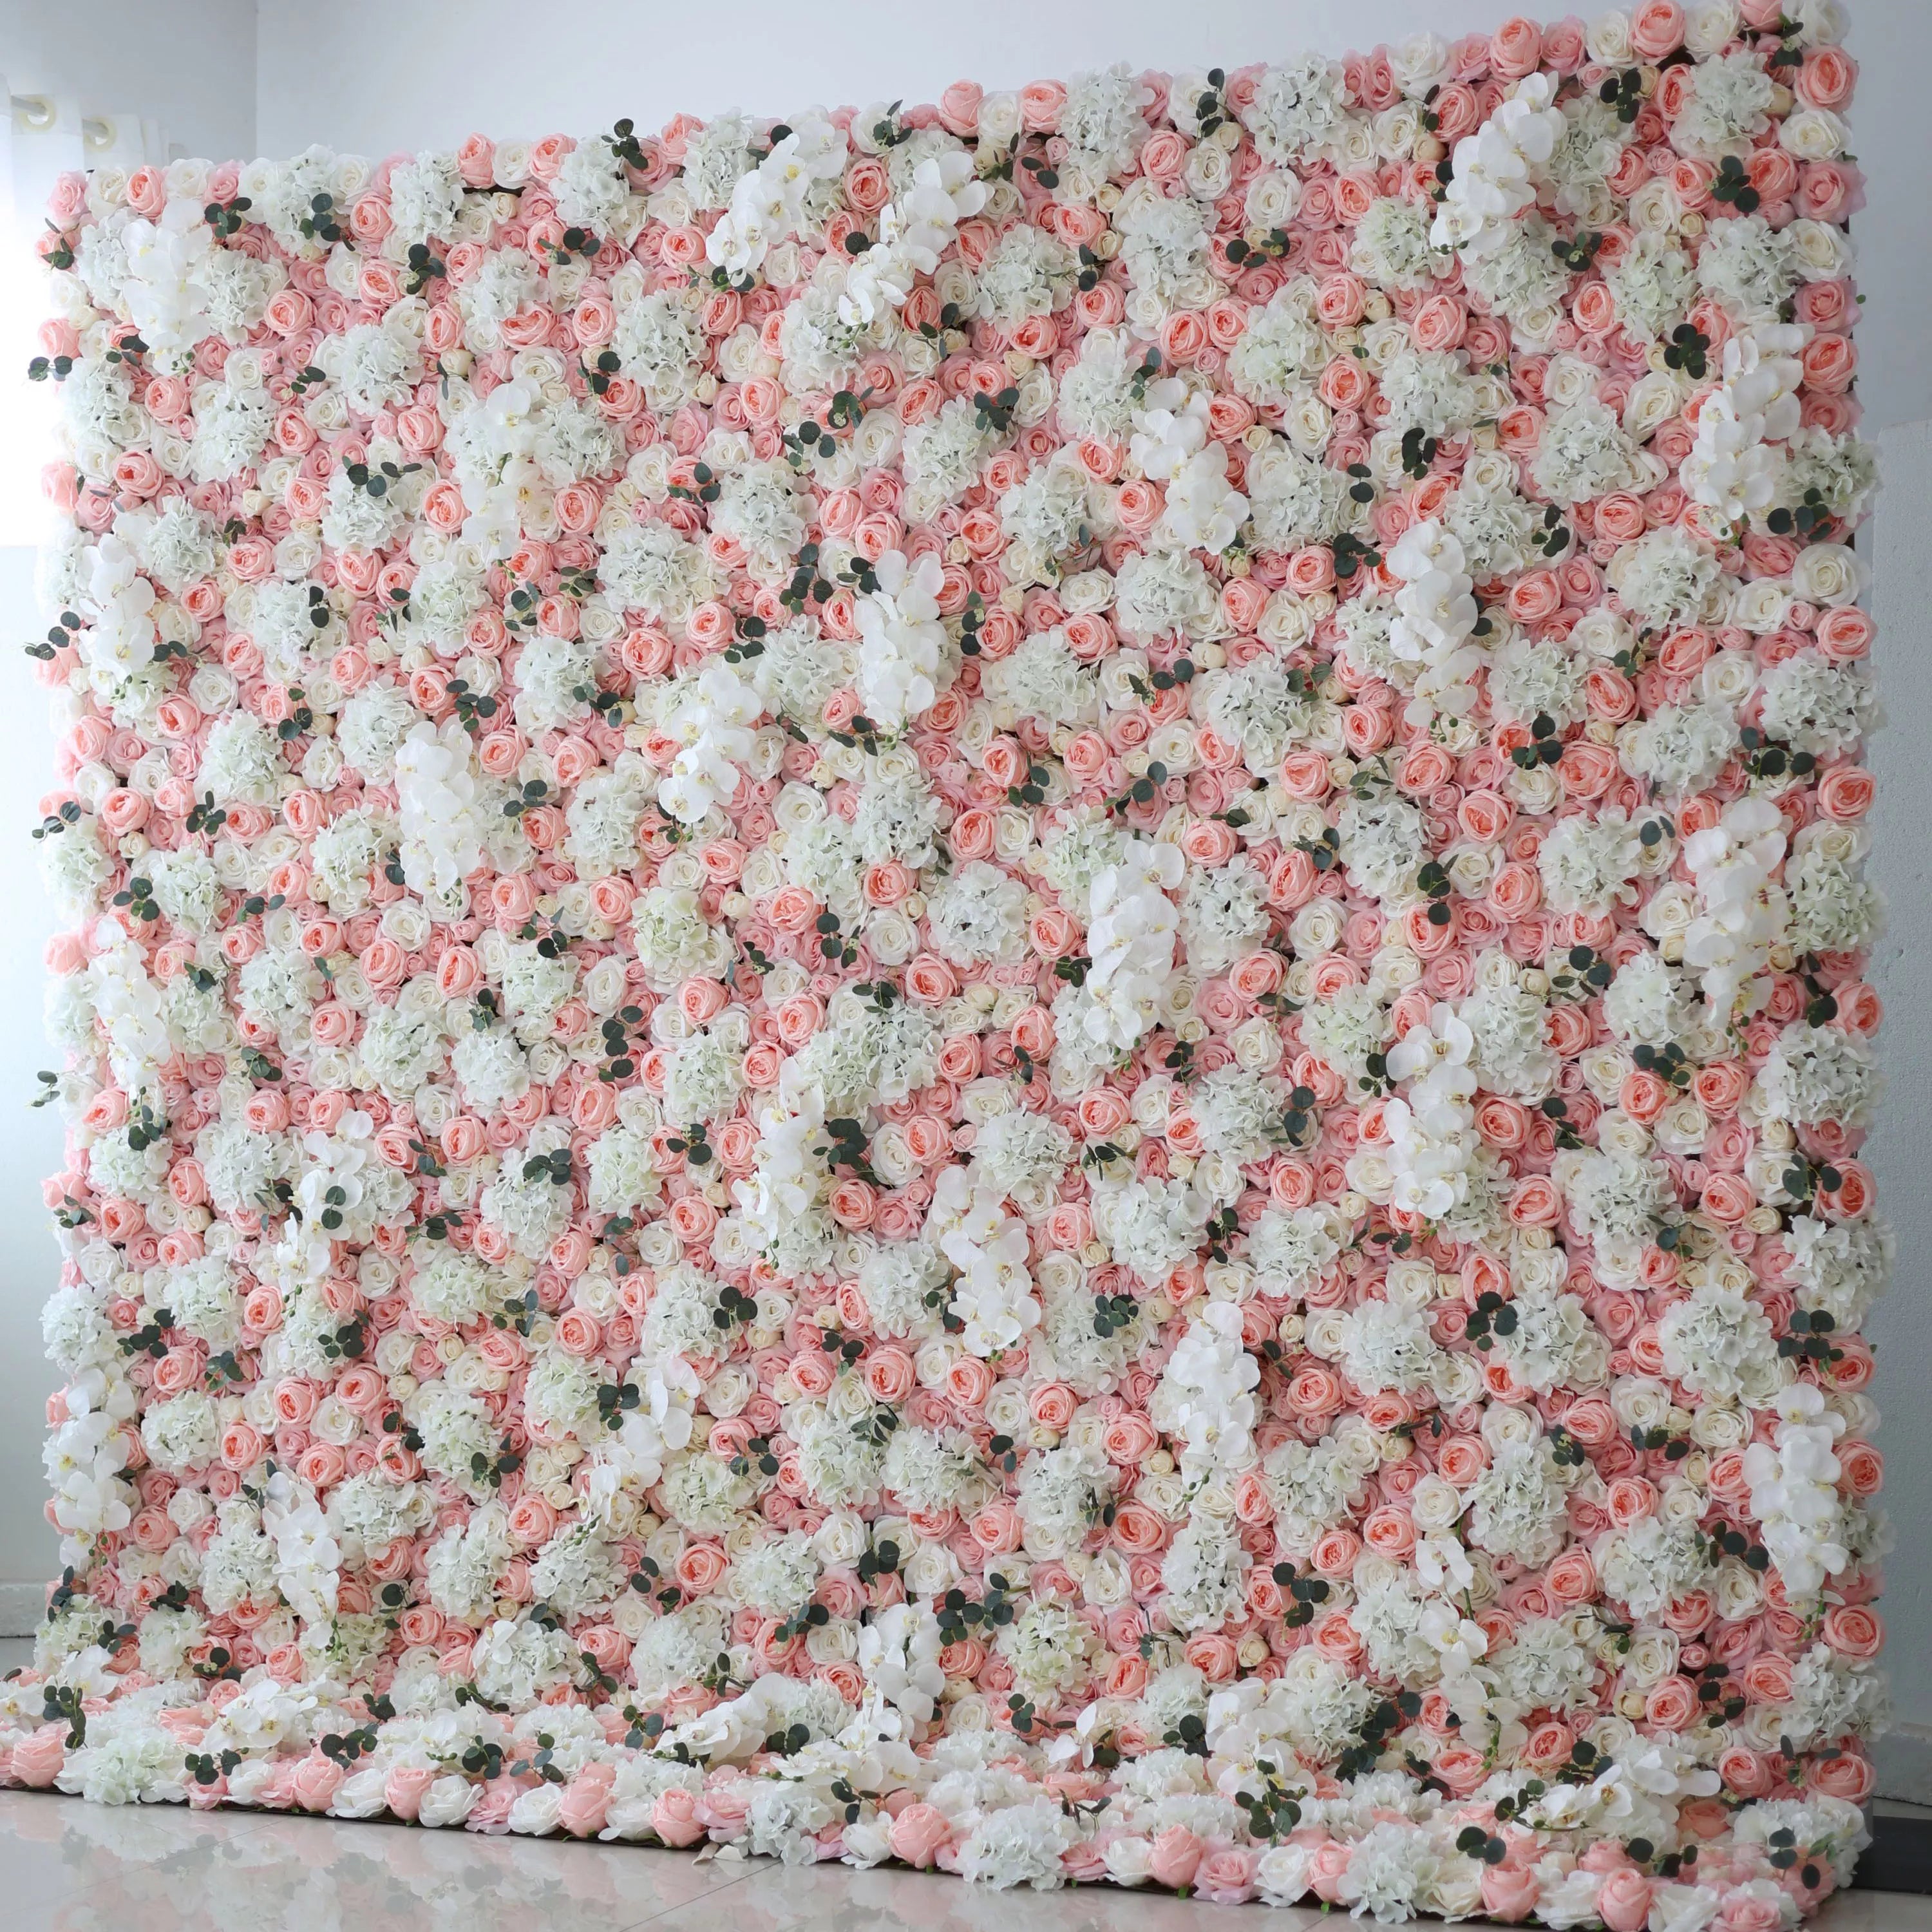 زهرة فالار لفة النسيج الاصطناعي سحلية صغيرة وبراندي روز مع الورود البيضاء زهرة جدار خلفية الزفاف ، ديكور حزب الأزهار ، الحدث